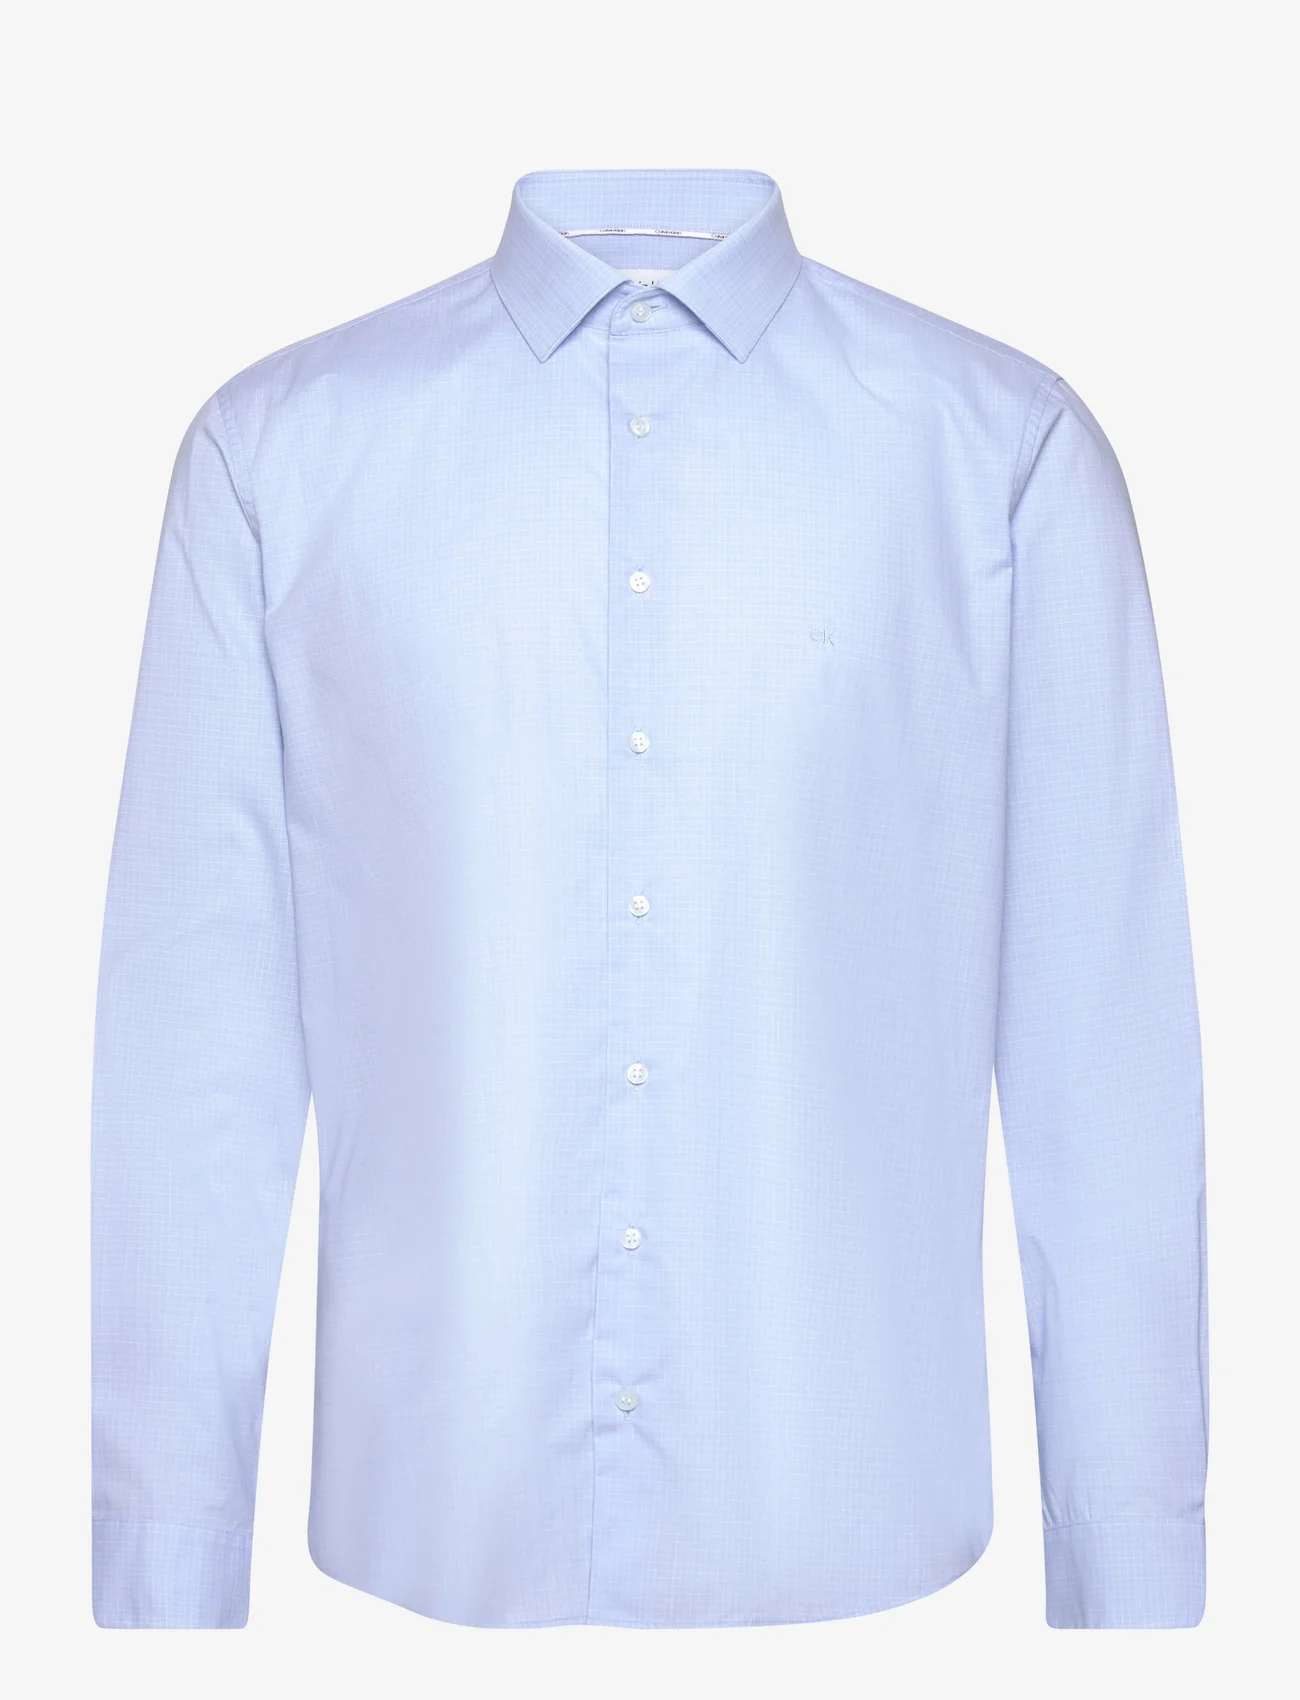 Calvin Klein - CHECK EASY CARE FITTED SHIRT - basic skjorter - vista blue - 0